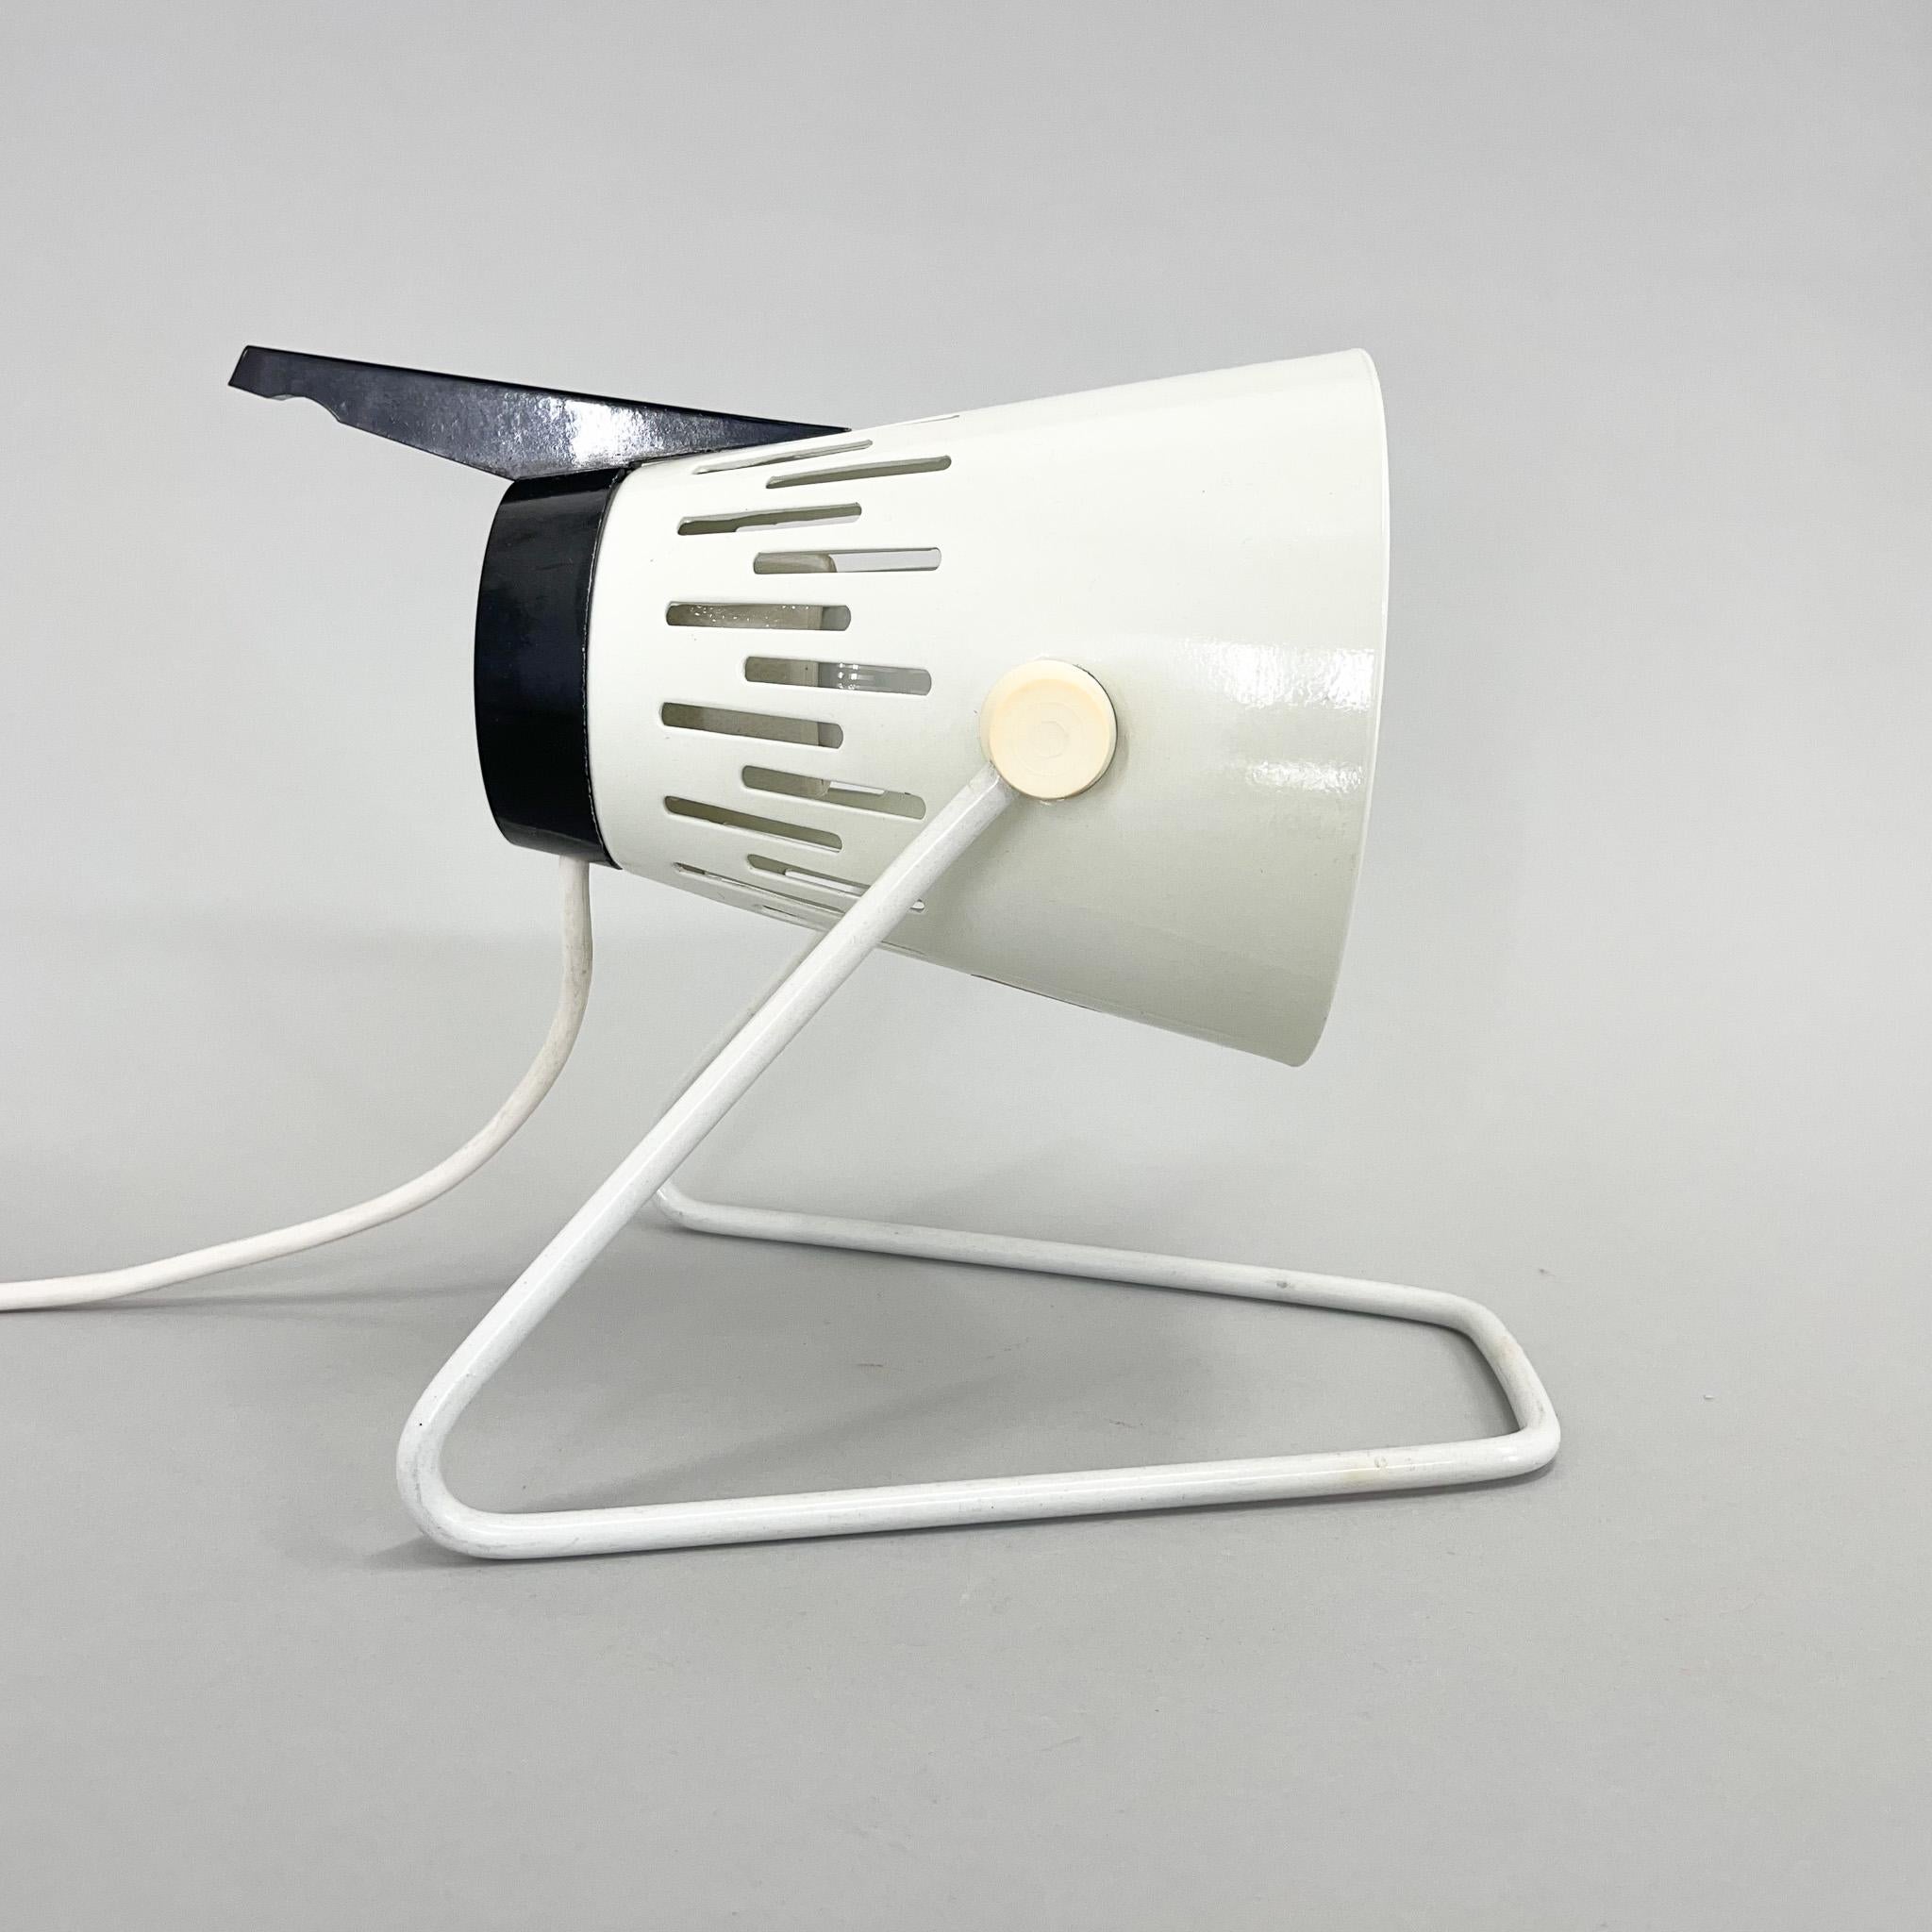 Lampe de table vintage en métal et plastique de l'ère spatiale fabriquée dans les années 1970 à Leipzig (Allemagne).